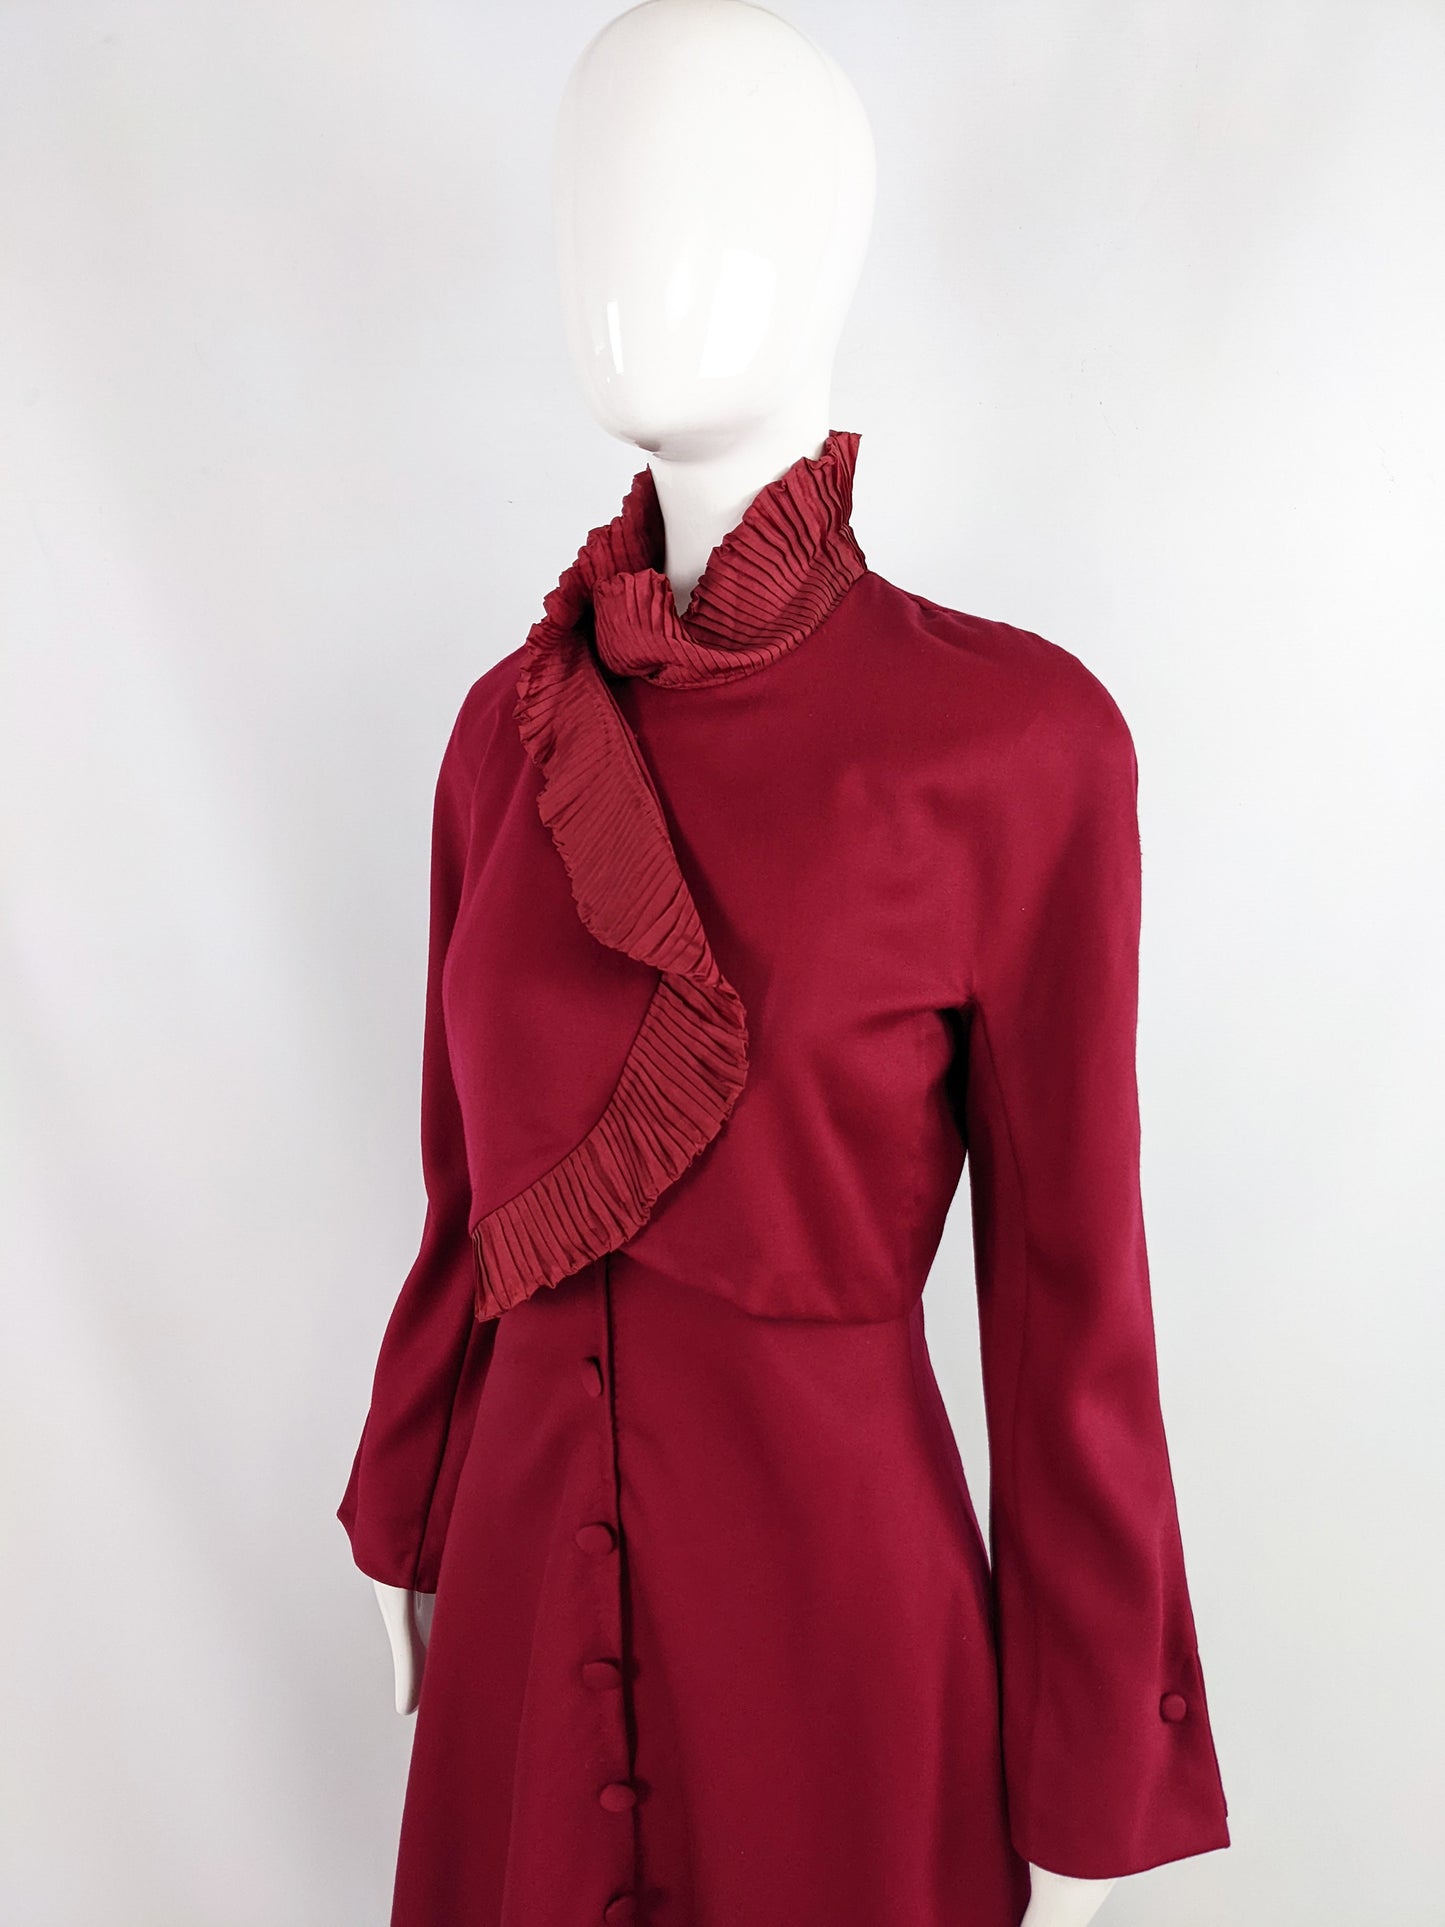 Eli Colaj Vintage Wine Red Wool & Pleated Ruffle Taffeta Collar Dress, 1980s